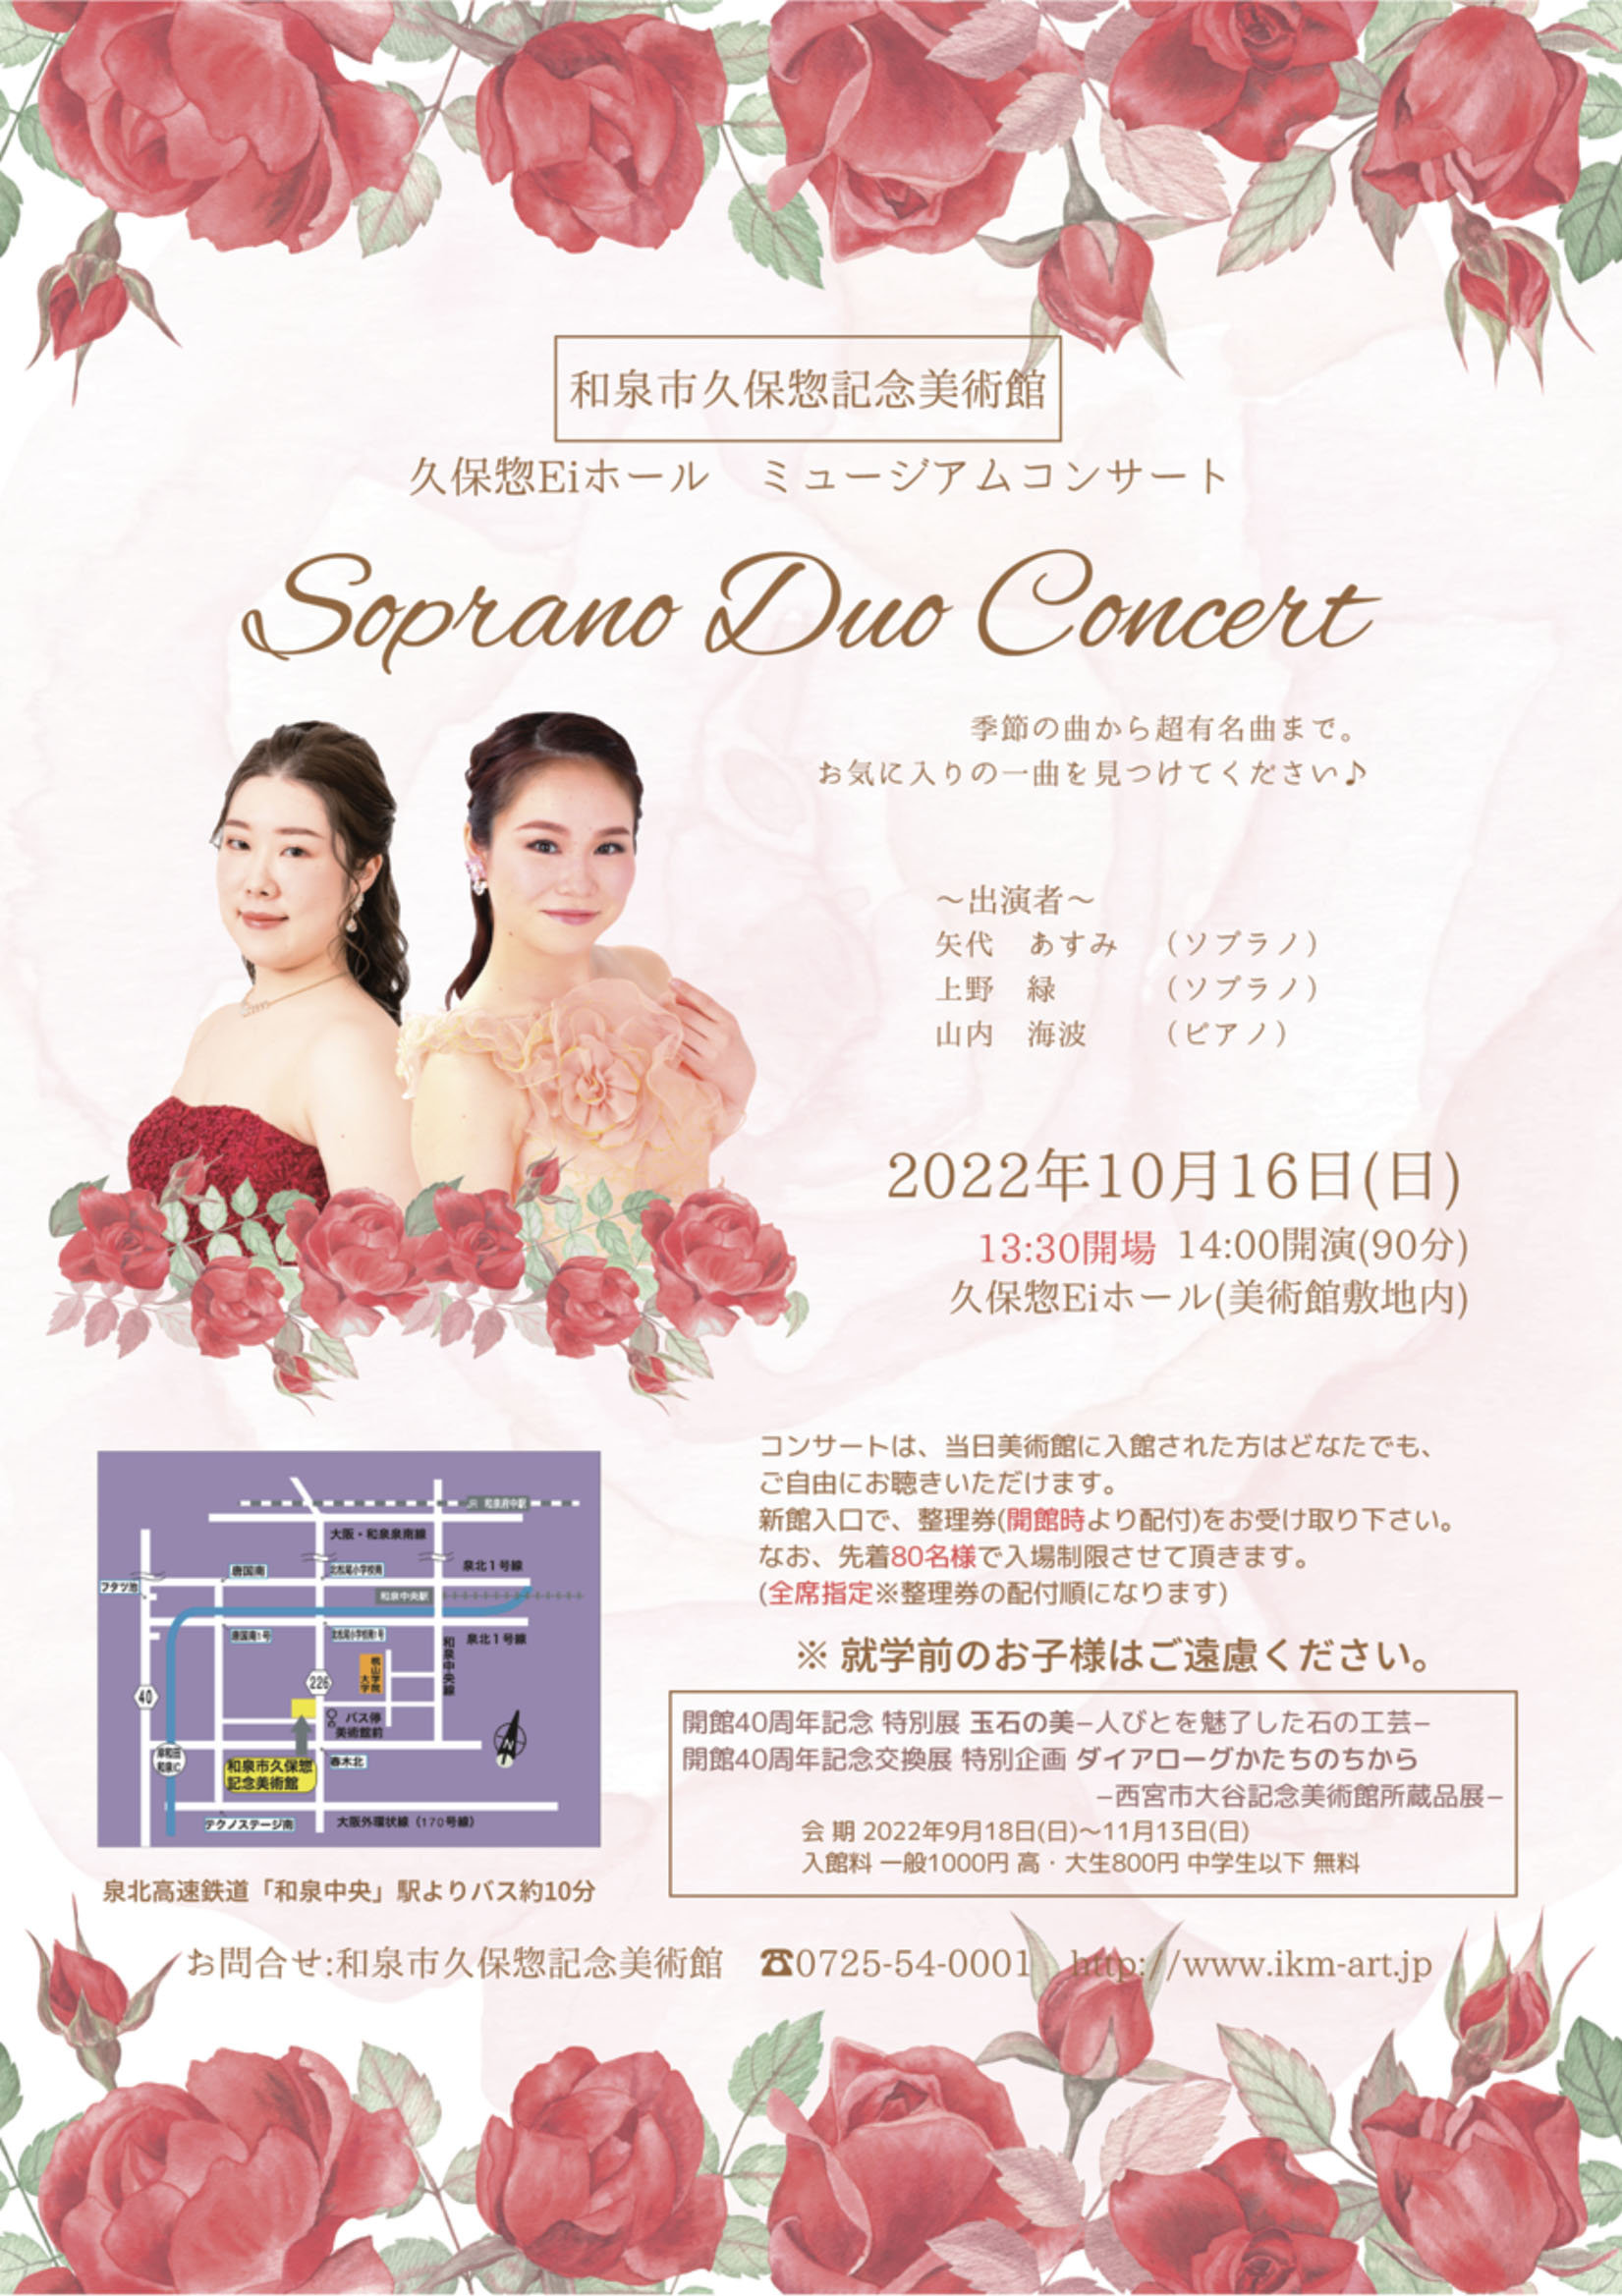 Soprano Duo Concert〜季節の曲から超有名曲まで〜